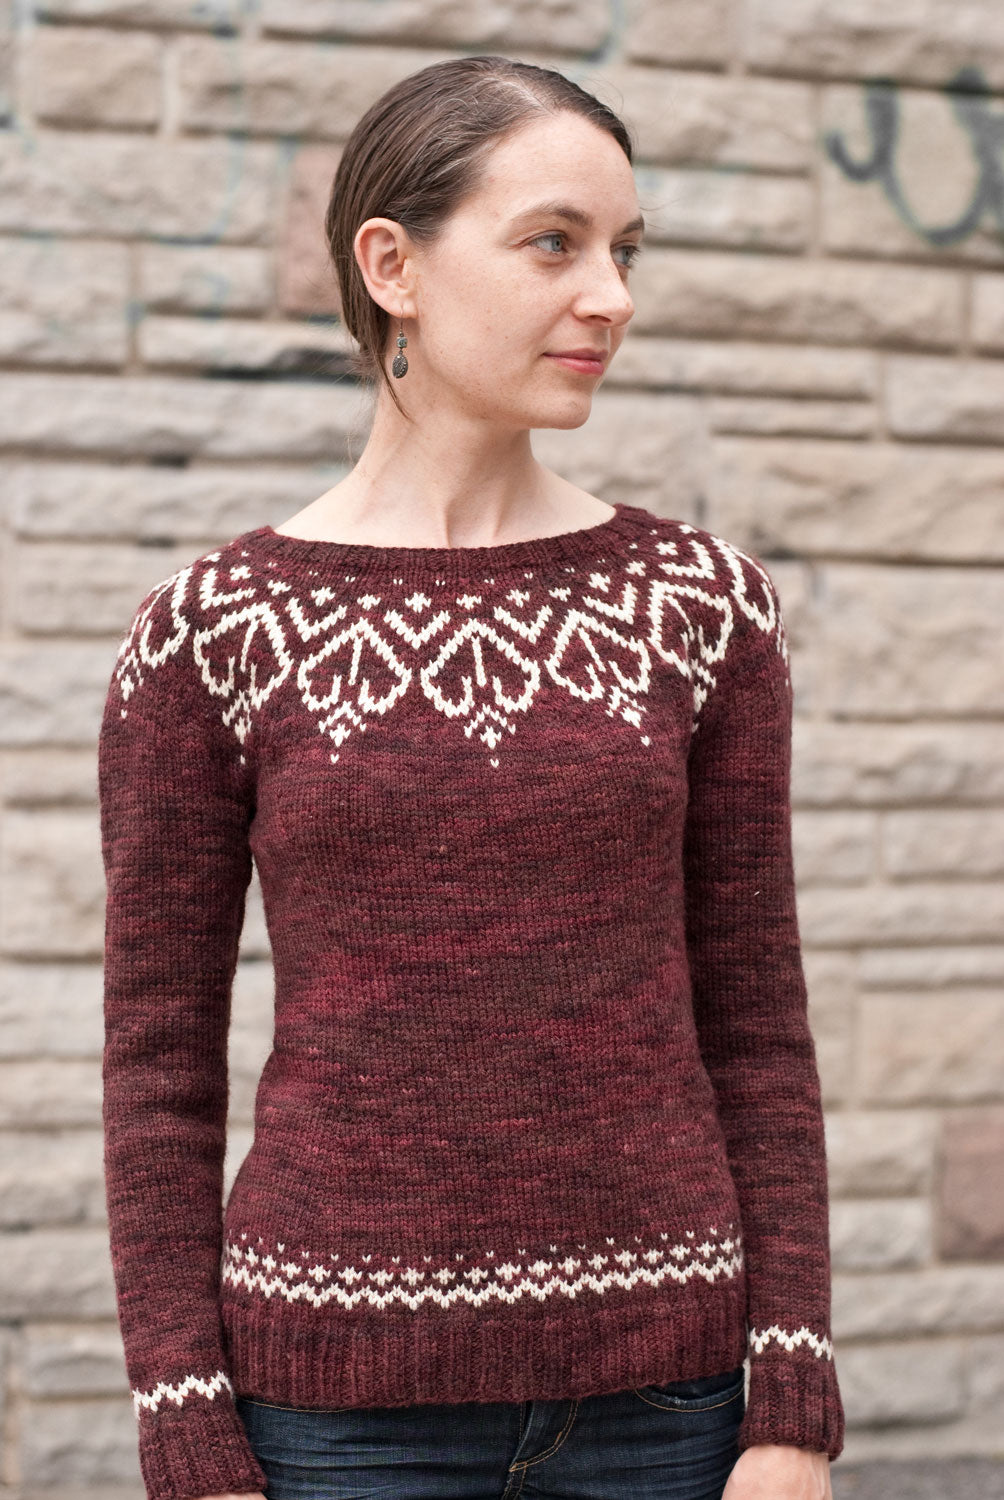 Adelpha sweater knitting pattern - Sweet Paprika Designs